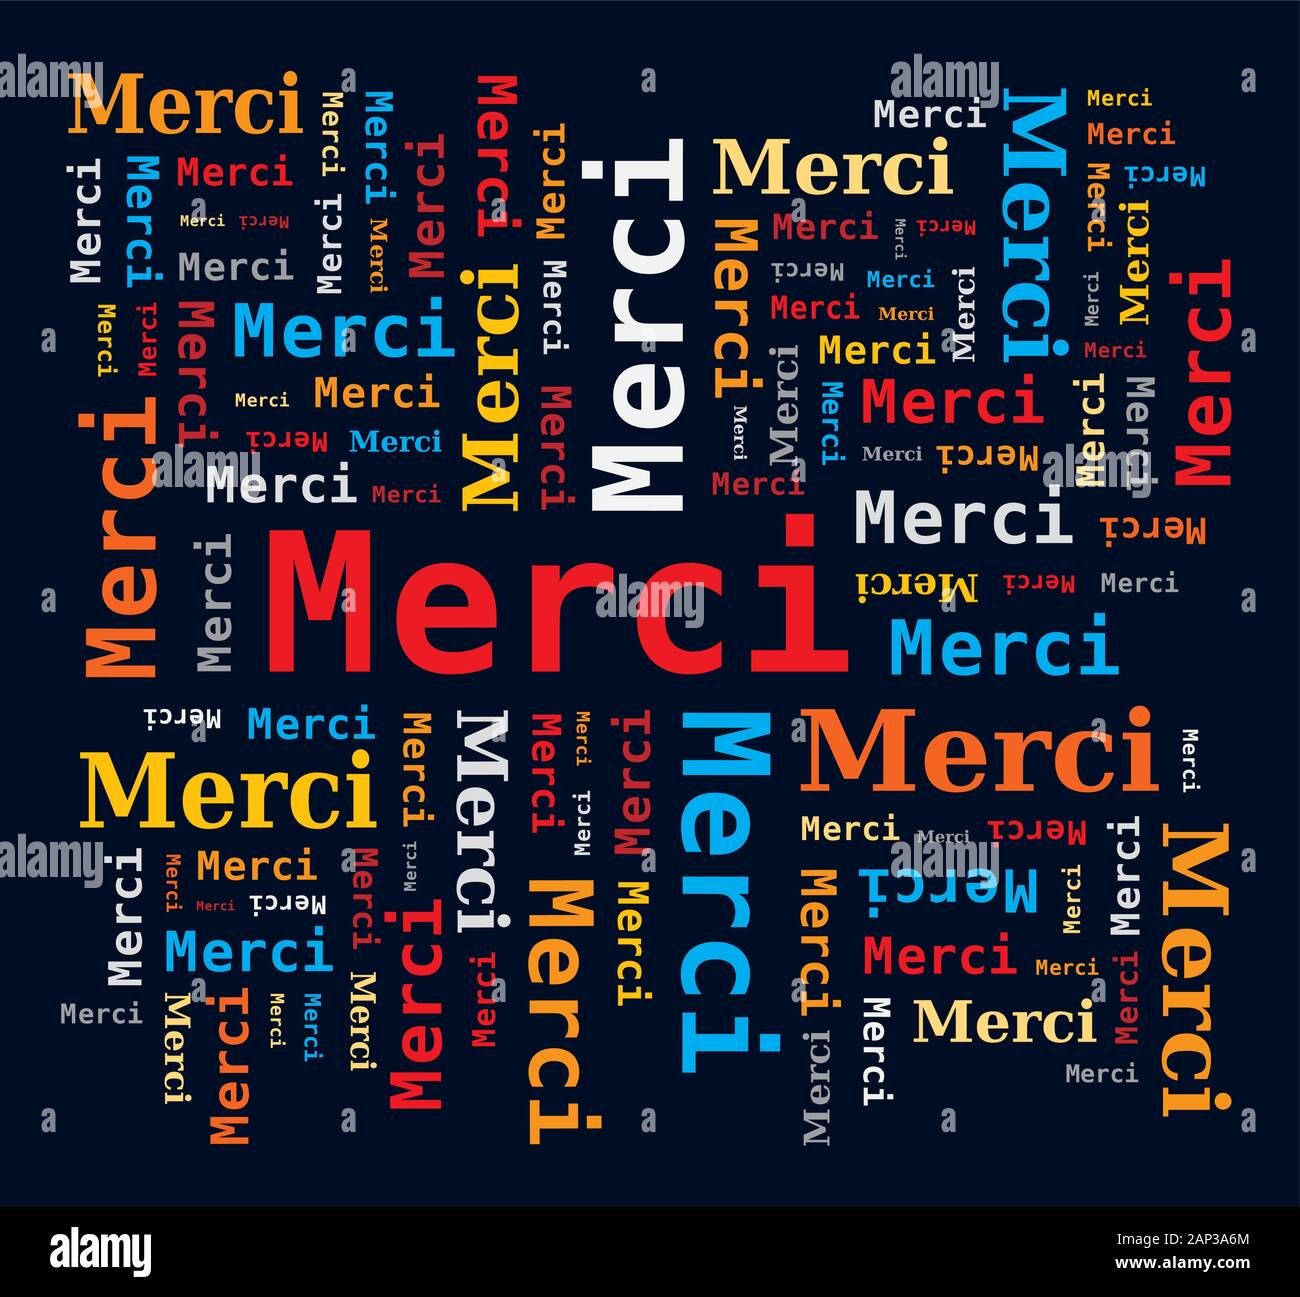 Word Cloud - Vielen Dank in französischer Sprache - Merci. Mehrfarbige Buchstaben und verschiedene Orientierungen Stock Vektor